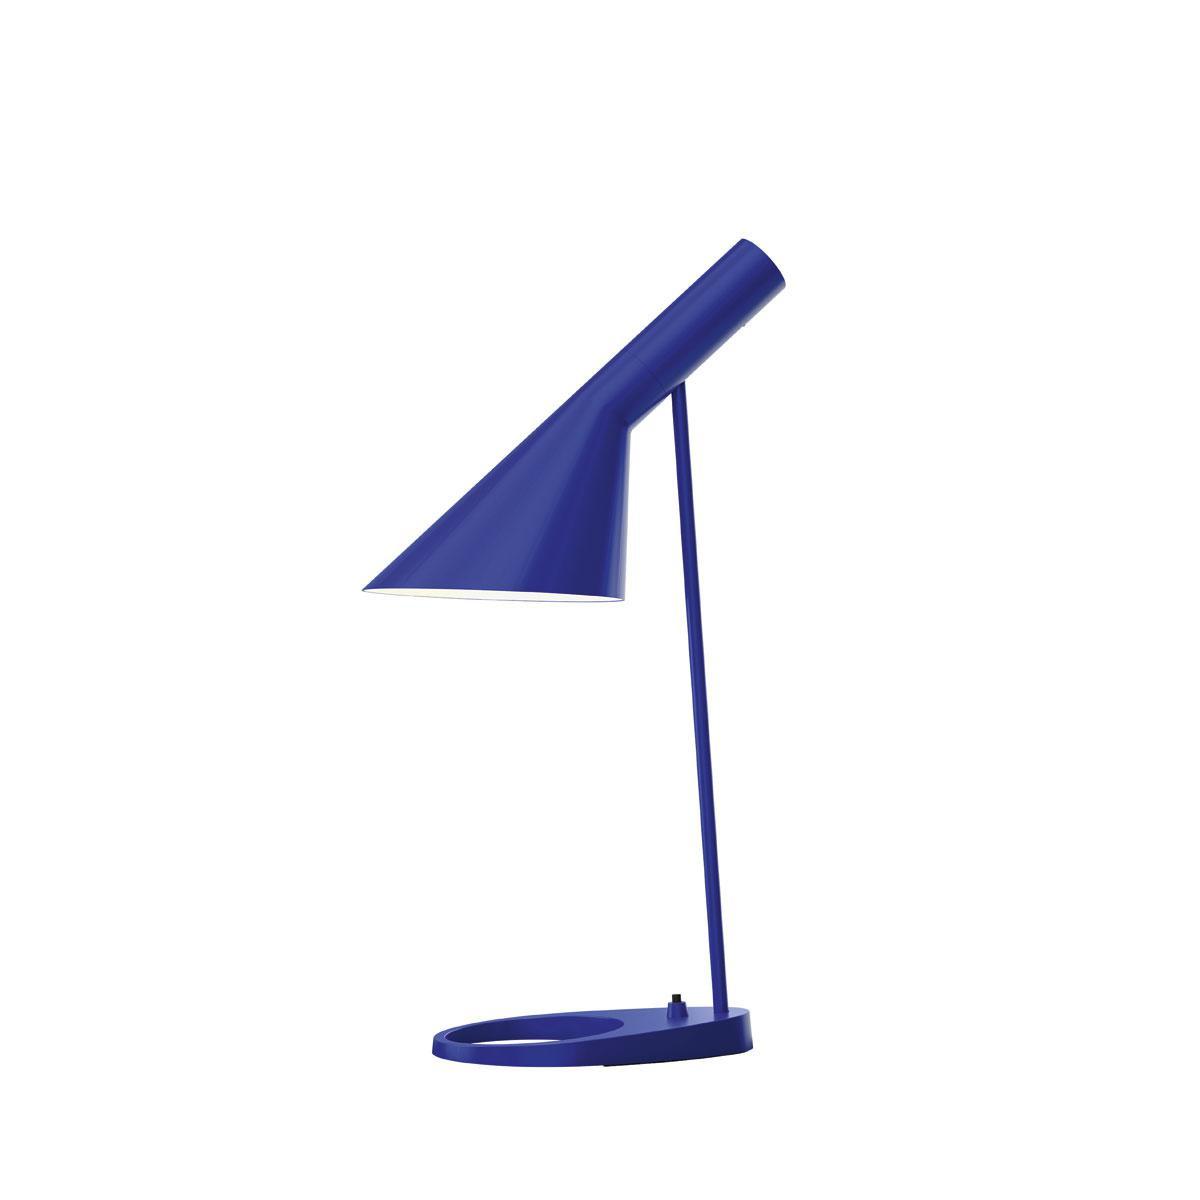 Arne Jacobsen a créé la lampe AJ Table en deux formats, mais le plus petit a longtemps été retiré du commerce. Lorsque la demande pour des luminaires de cette dimension s'est faite plus forte, Louis Poulsen a réédité ce modèle.